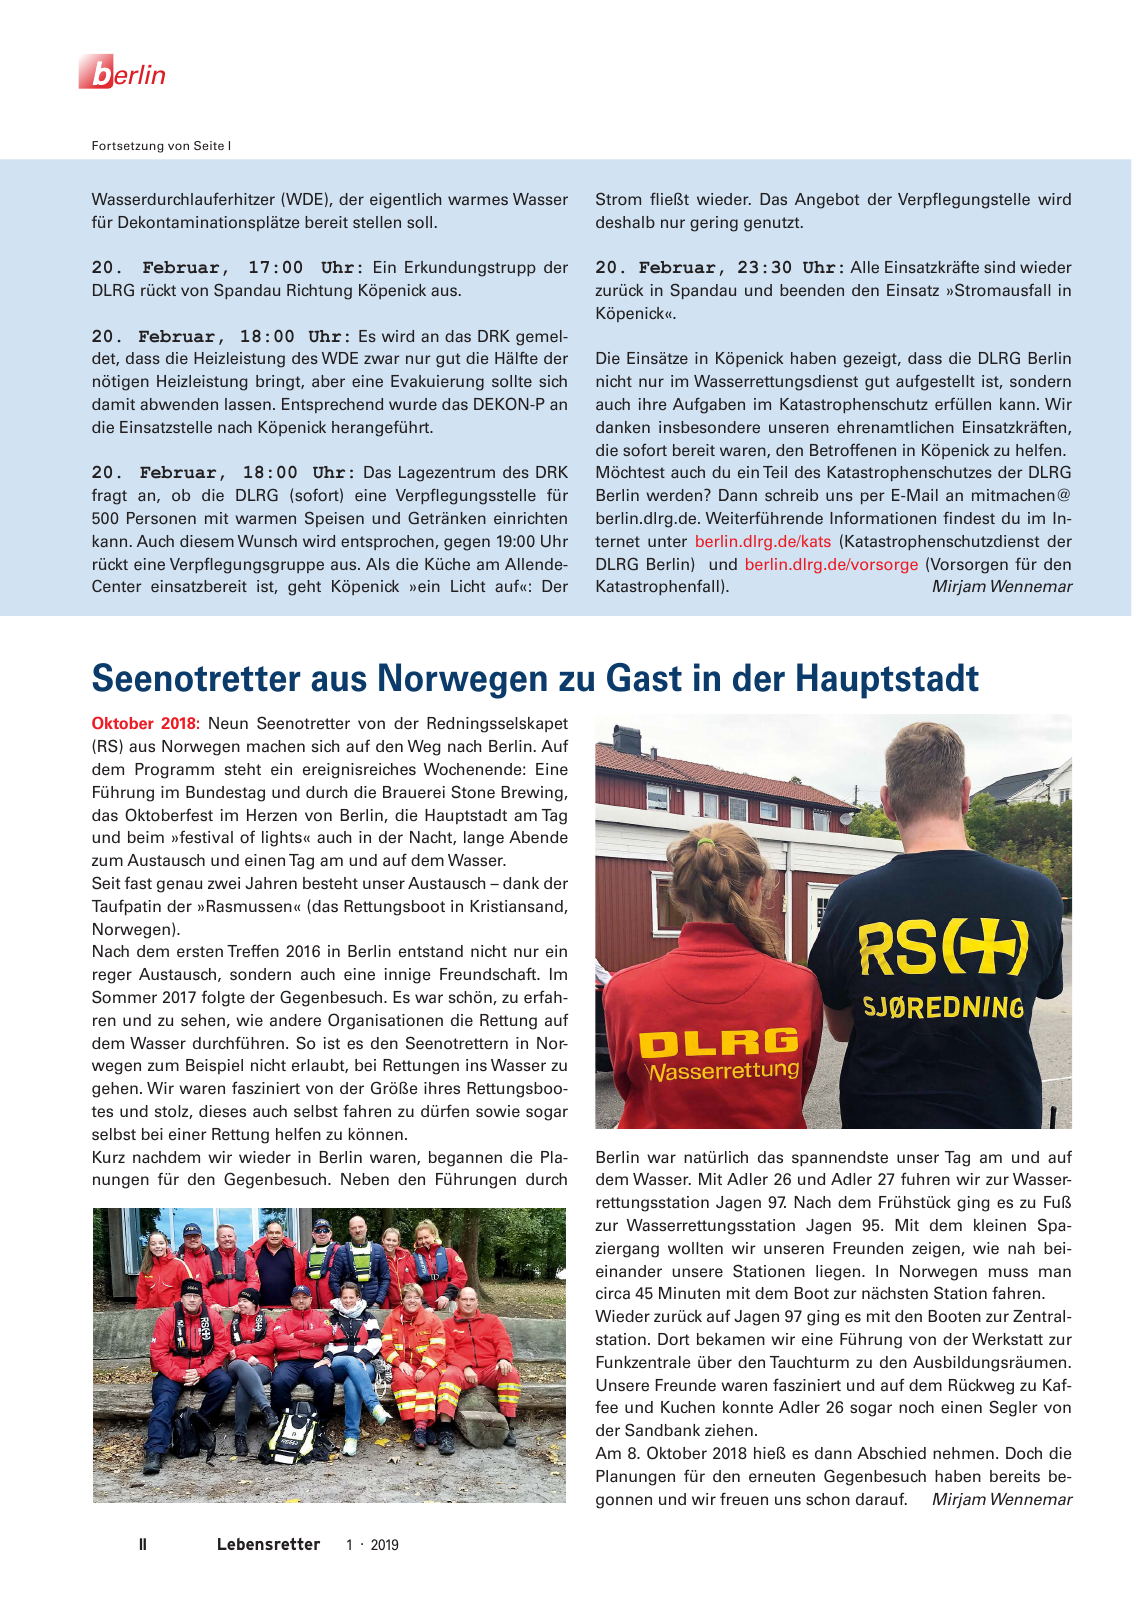 Vorschau Lebensretter 1/2019 –  Regionalausgabe Berlin Seite 4